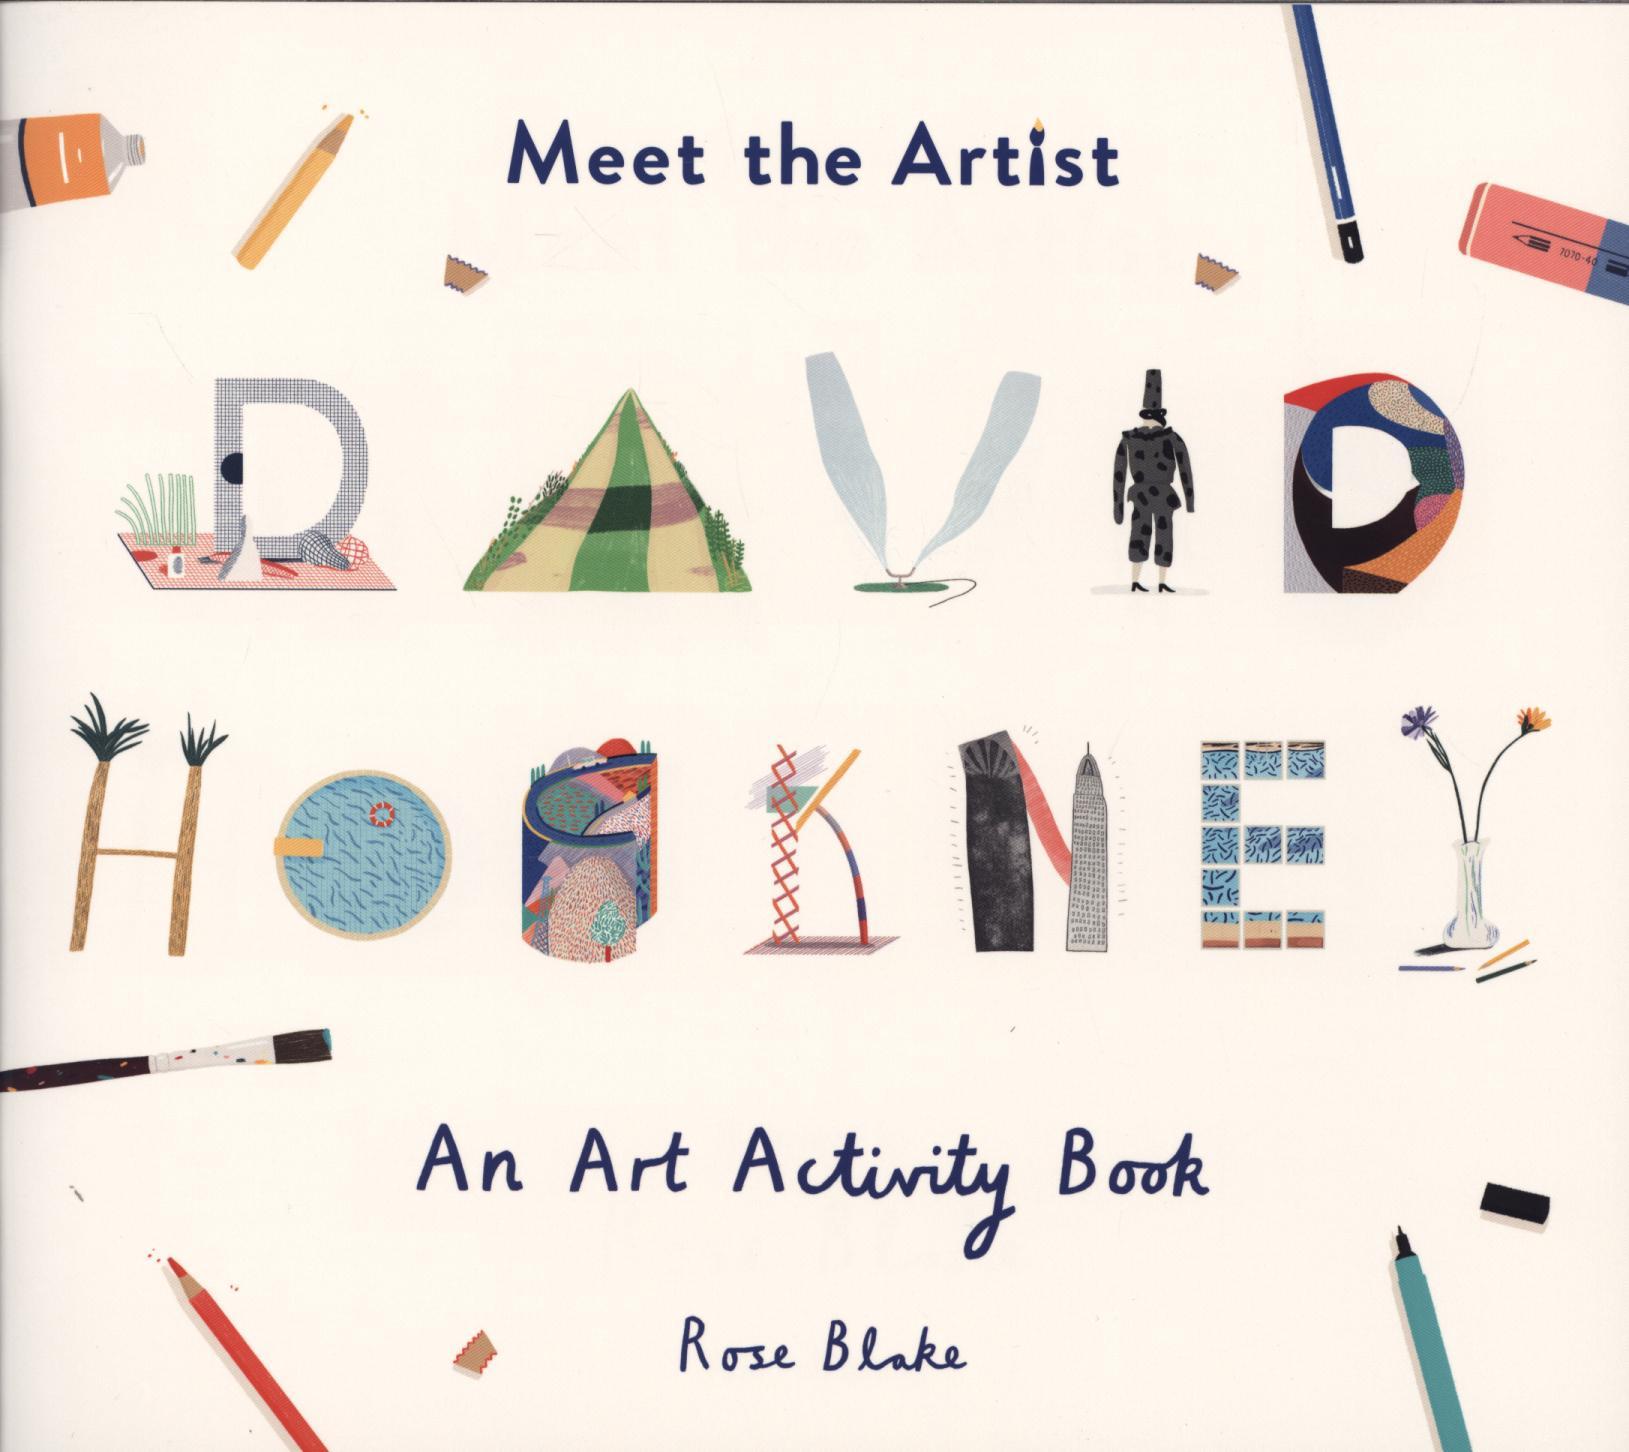 Meet the Artist: David Hockney